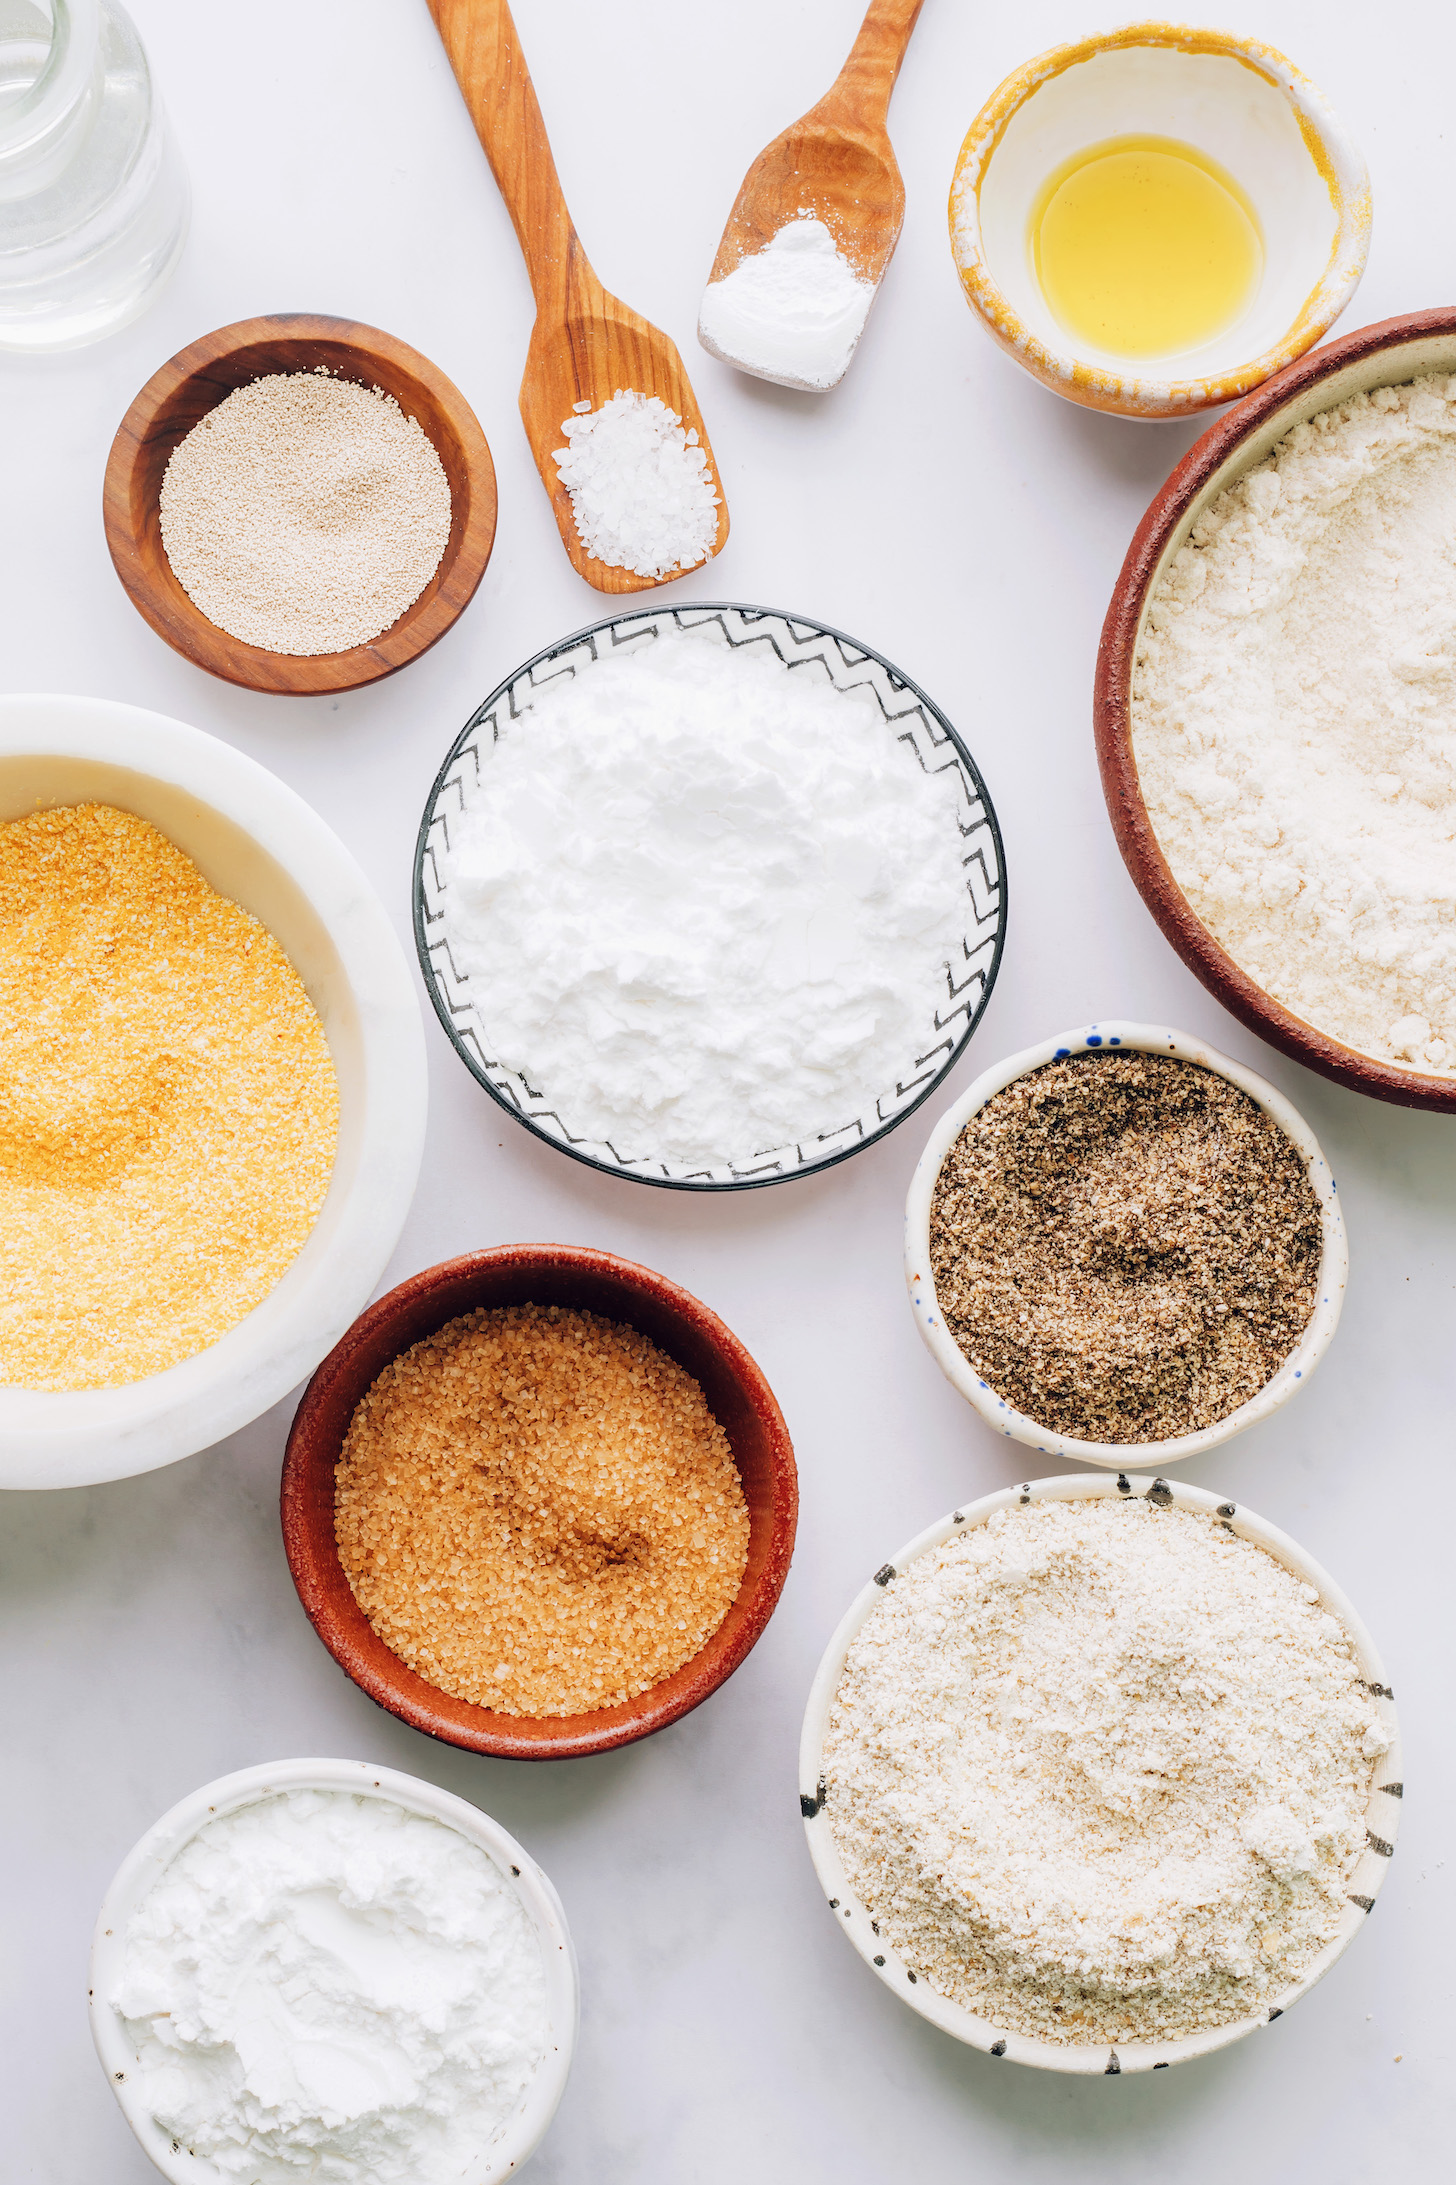 Yeast, salt, baking powder, avocado oil, brown rice flour, tapioca flour, potato starch, oat flour, cornmeal, ground chia seeds, and cane sugar